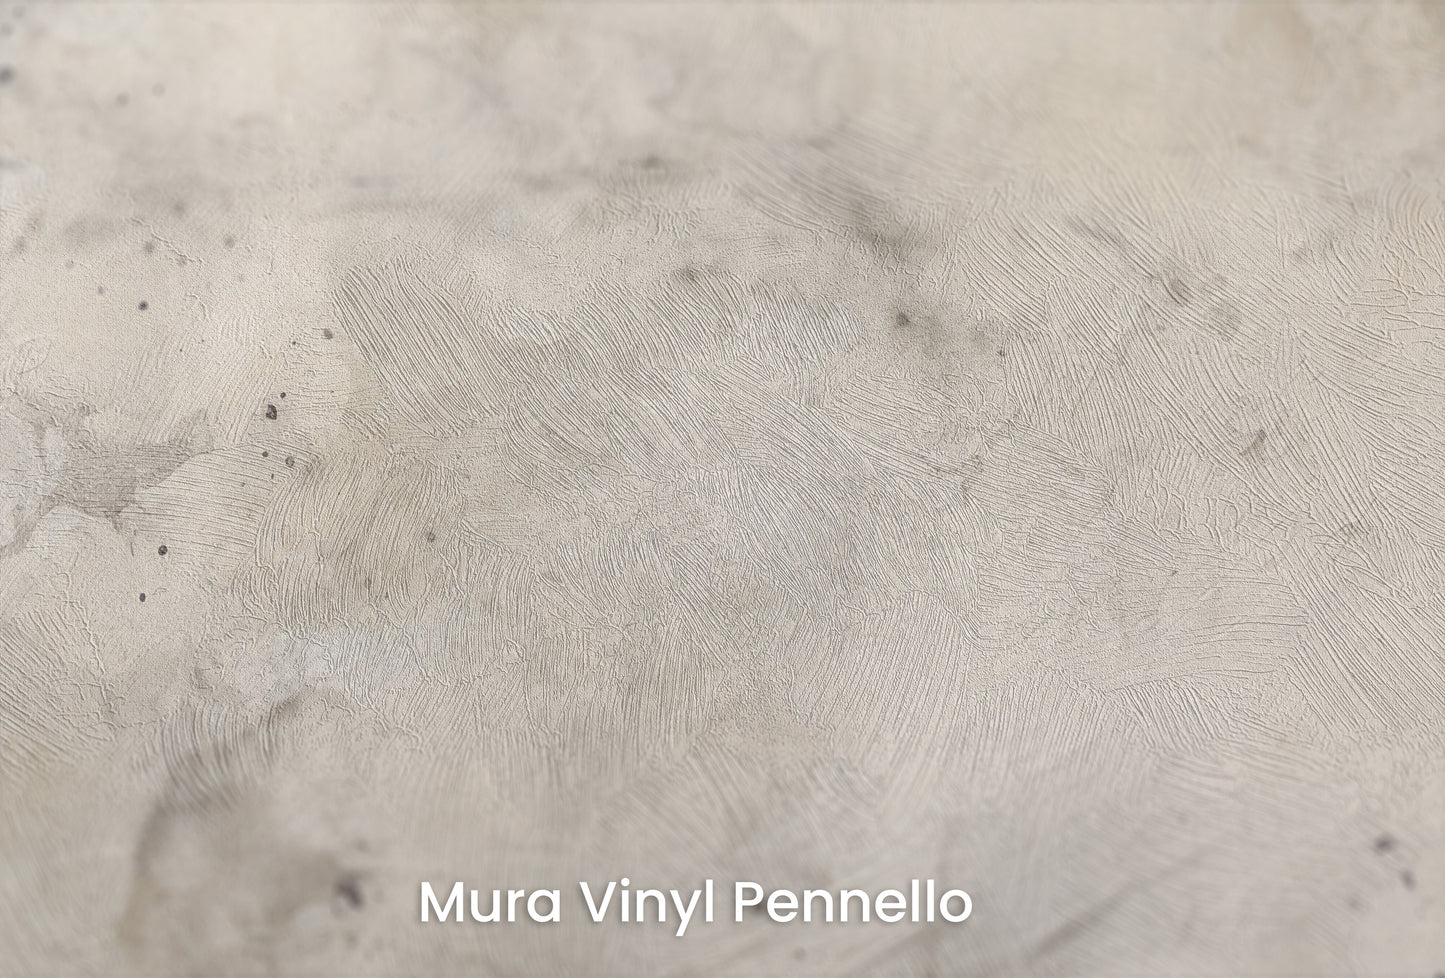 Zbliżenie na artystyczną fototapetę o nazwie SMOKE WHIRL ABSTRACT na podłożu Mura Vinyl Pennello - faktura pociągnięć pędzla malarskiego.